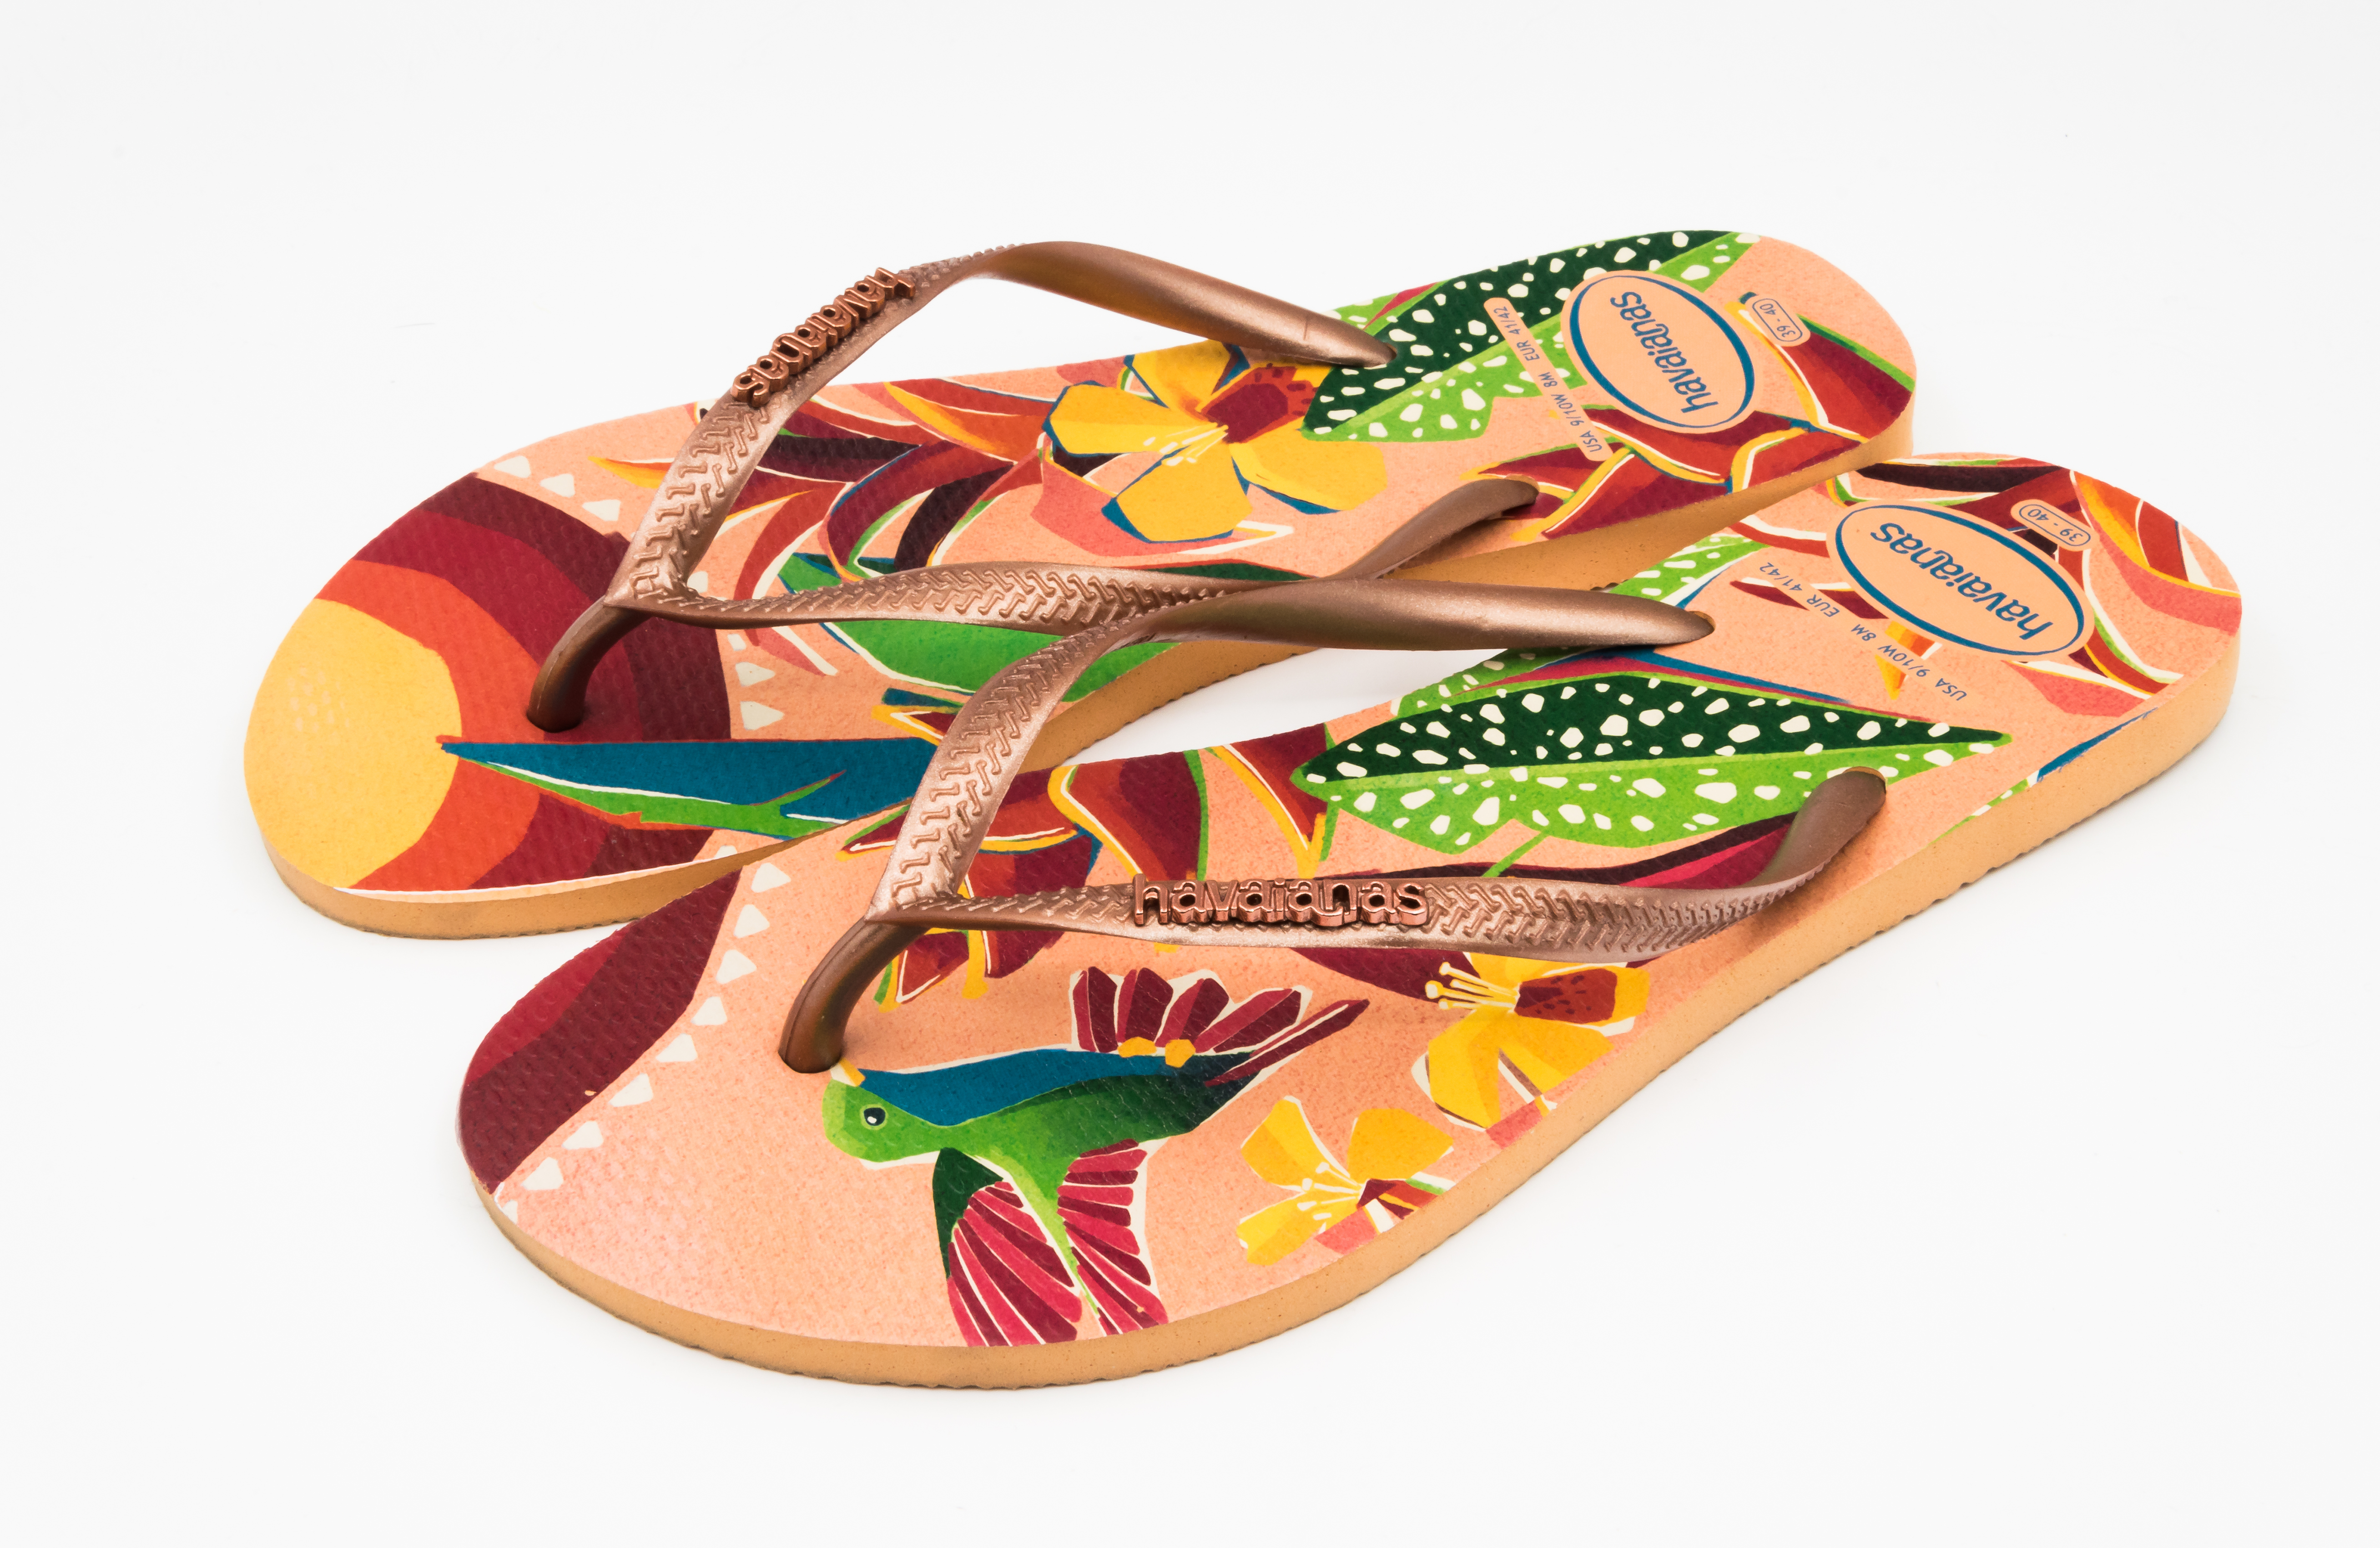 Havaianas Top Flip Flops for Women - Summer Style